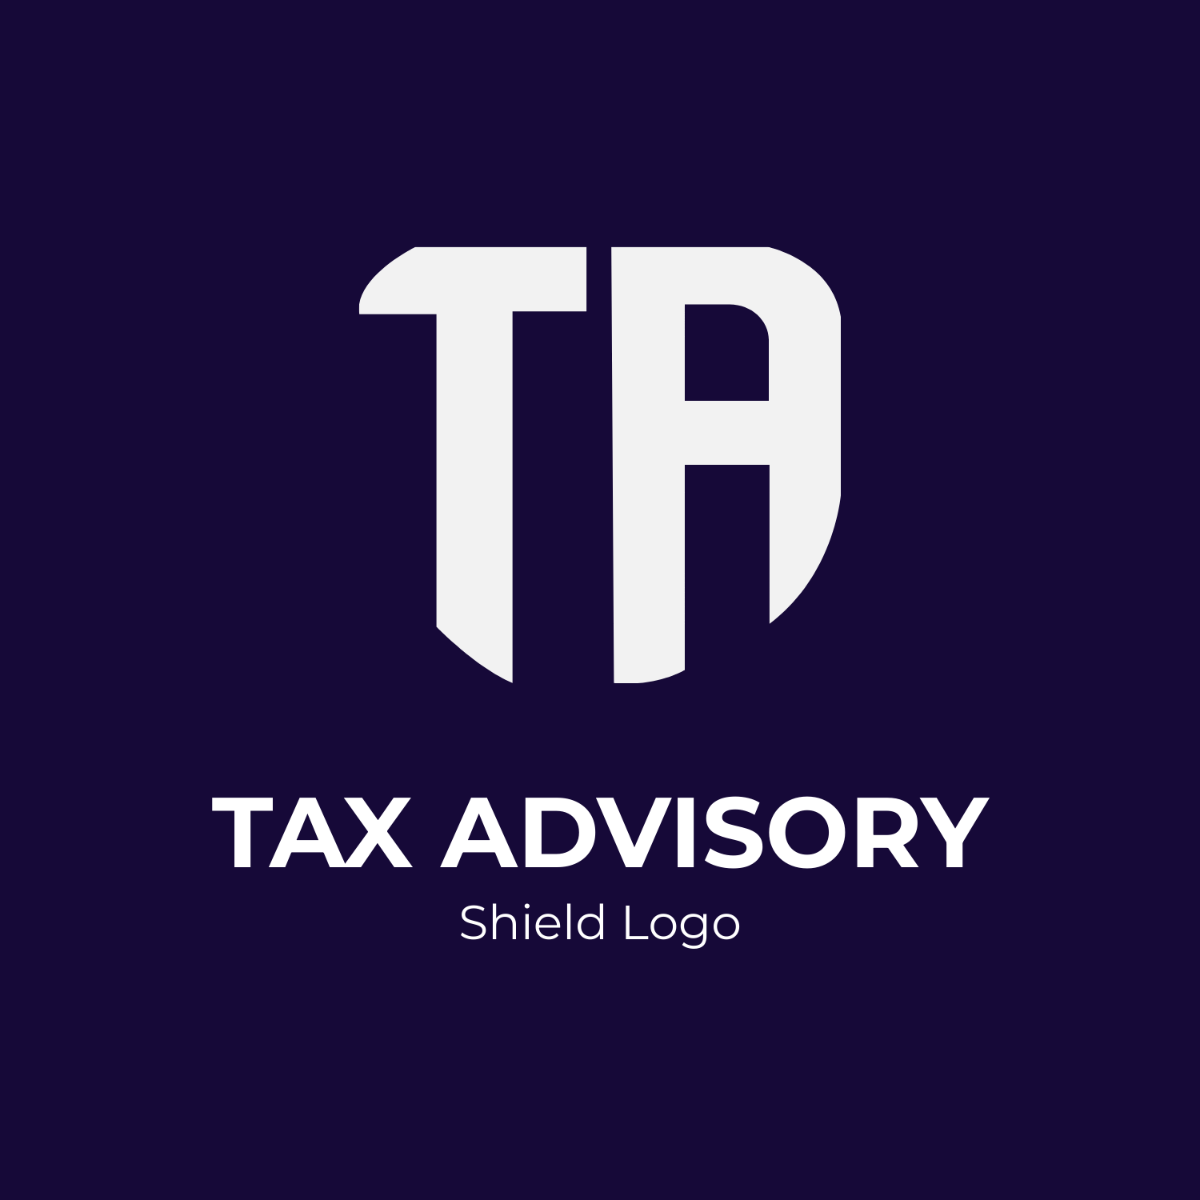 Tax Advisory Shield Logo